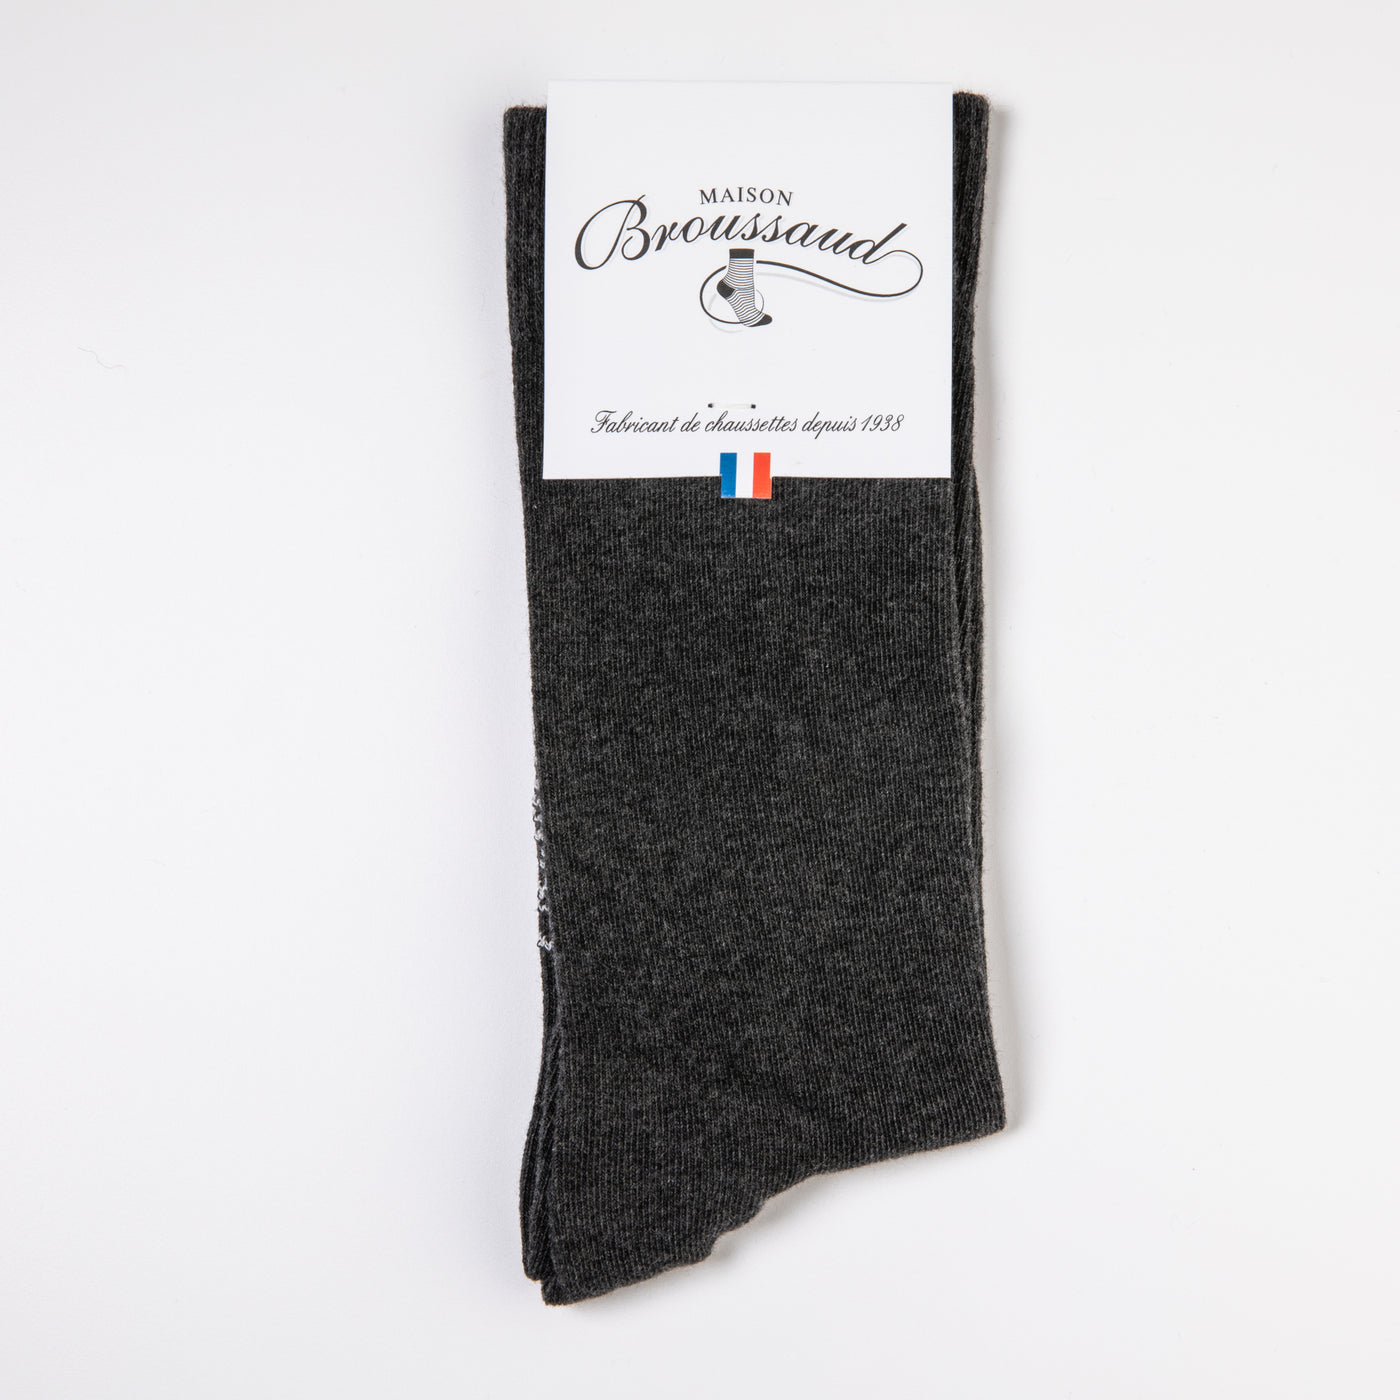 Plain anthracite socks